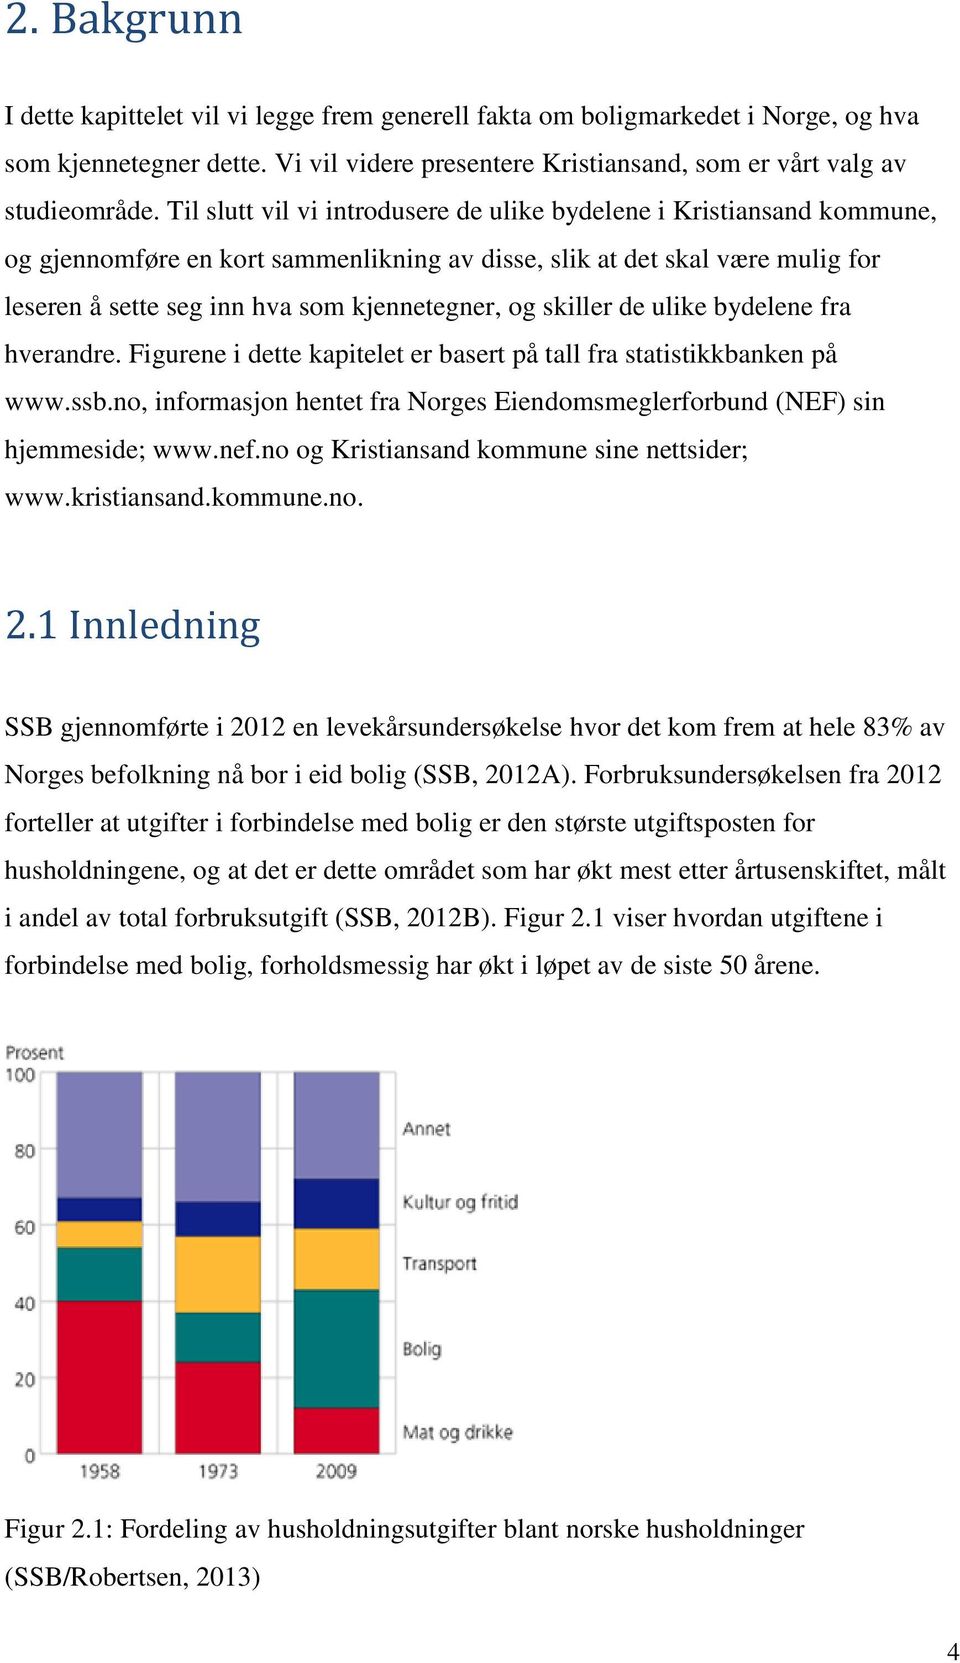 skiller de ulike bydelene fra hverandre. Figurene i dette kapitelet er basert på tall fra statistikkbanken på www.ssb.no, informasjon hentet fra Norges Eiendomsmeglerforbund (NEF) sin hjemmeside; www.